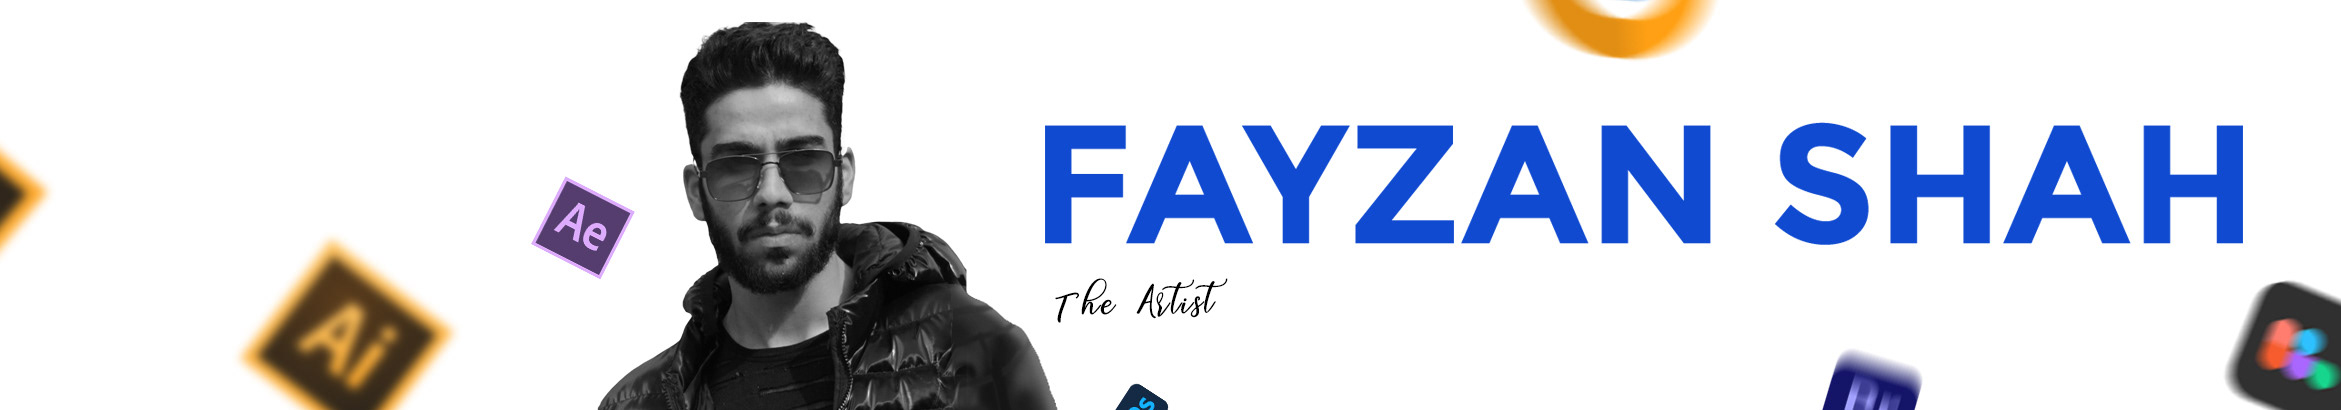 Fayzan Shahs profilbanner